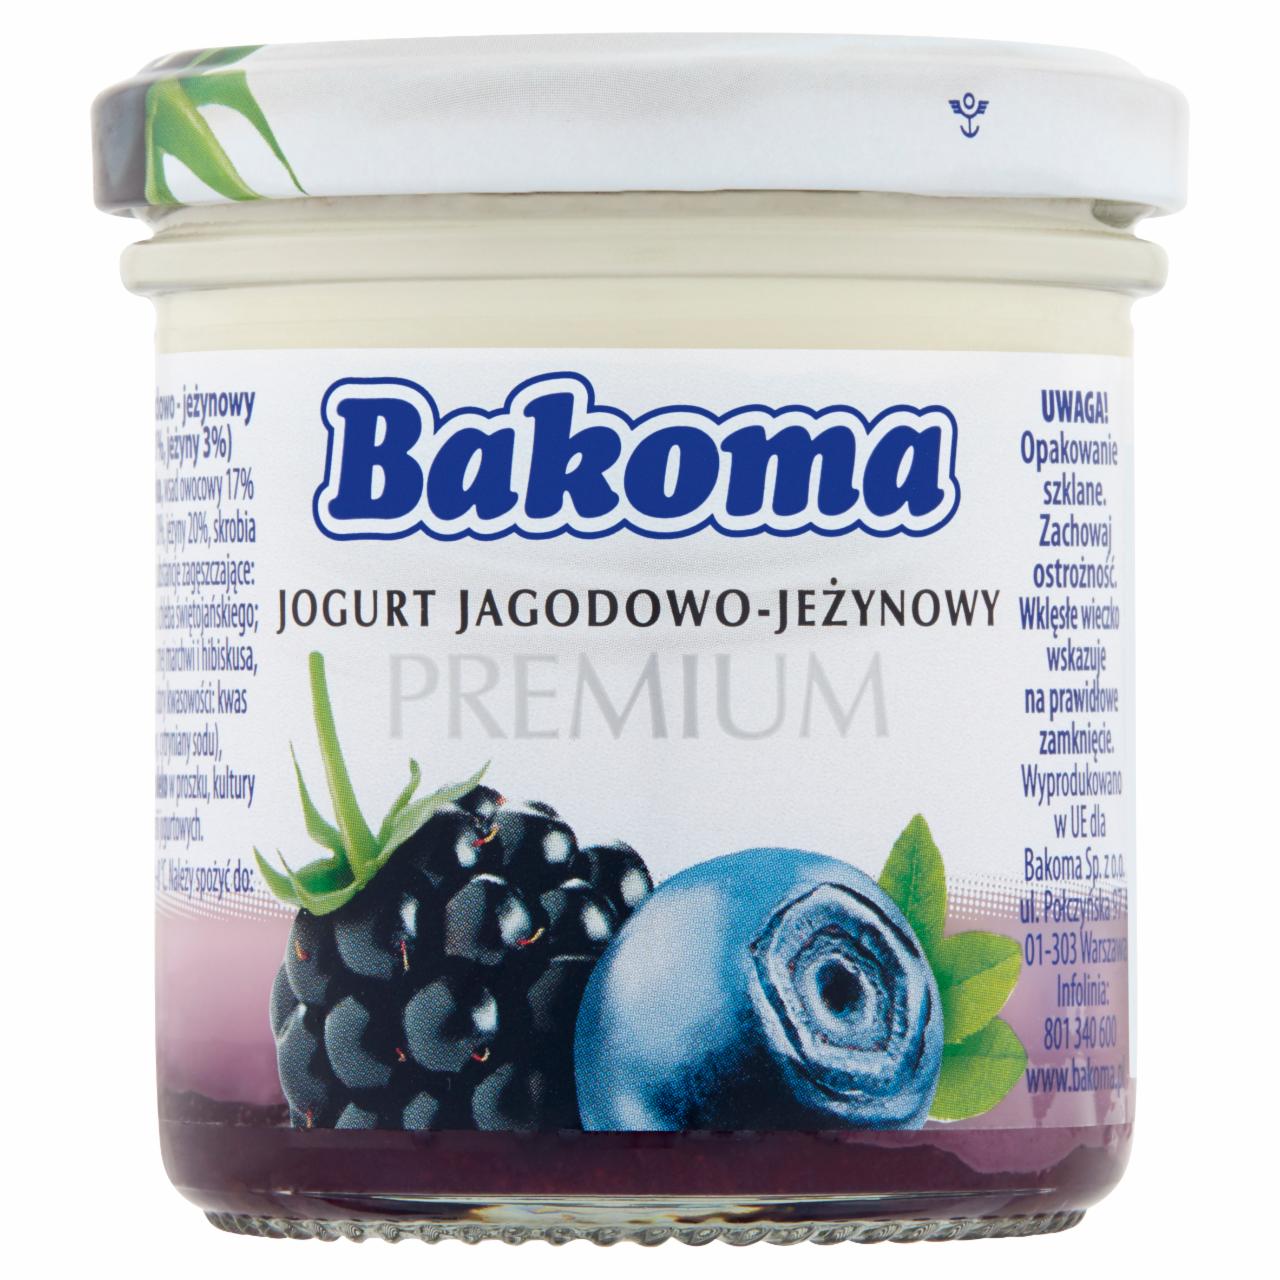 Zdjęcia - Bakoma Premium Jogurt jagodowo-jeżynowy 150 g